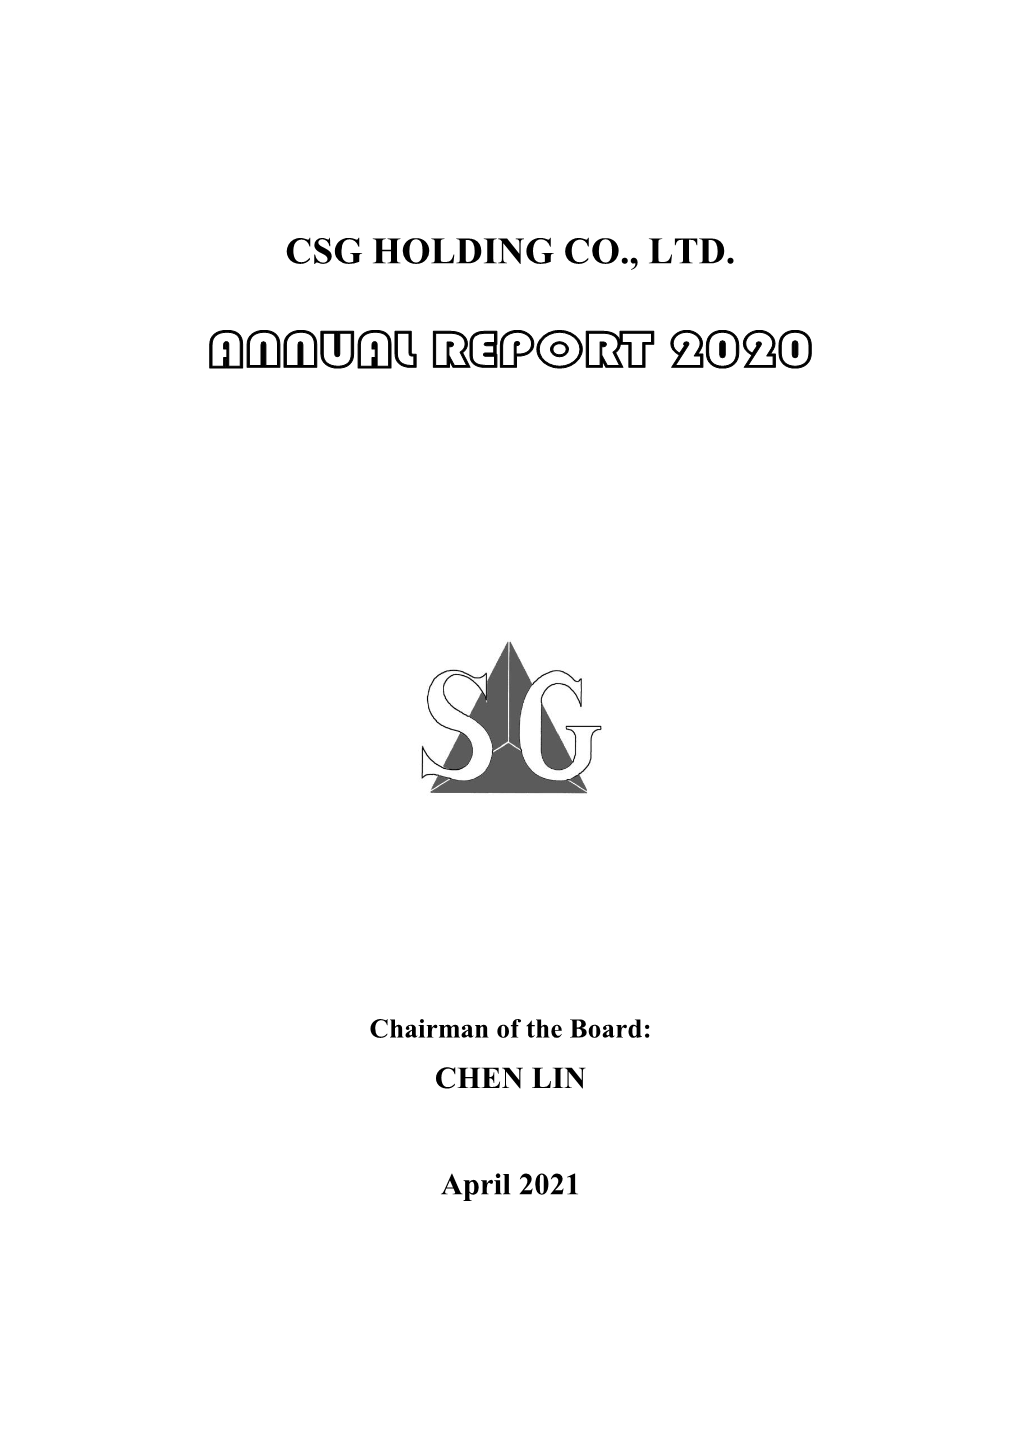 Csg Holding Co., Ltd